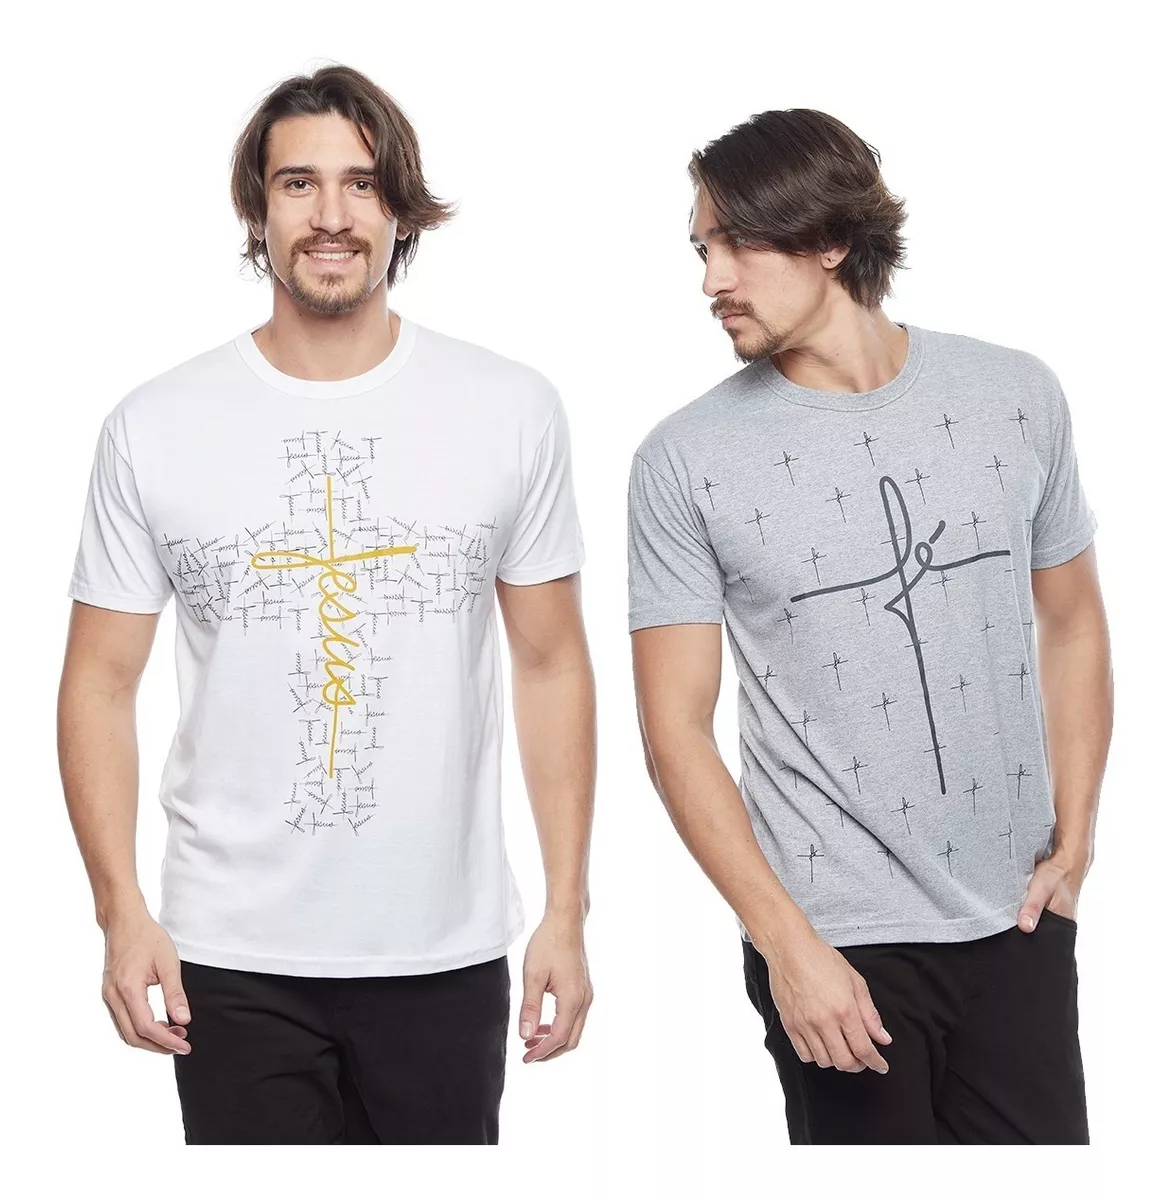 camisas evangelicas para revenda